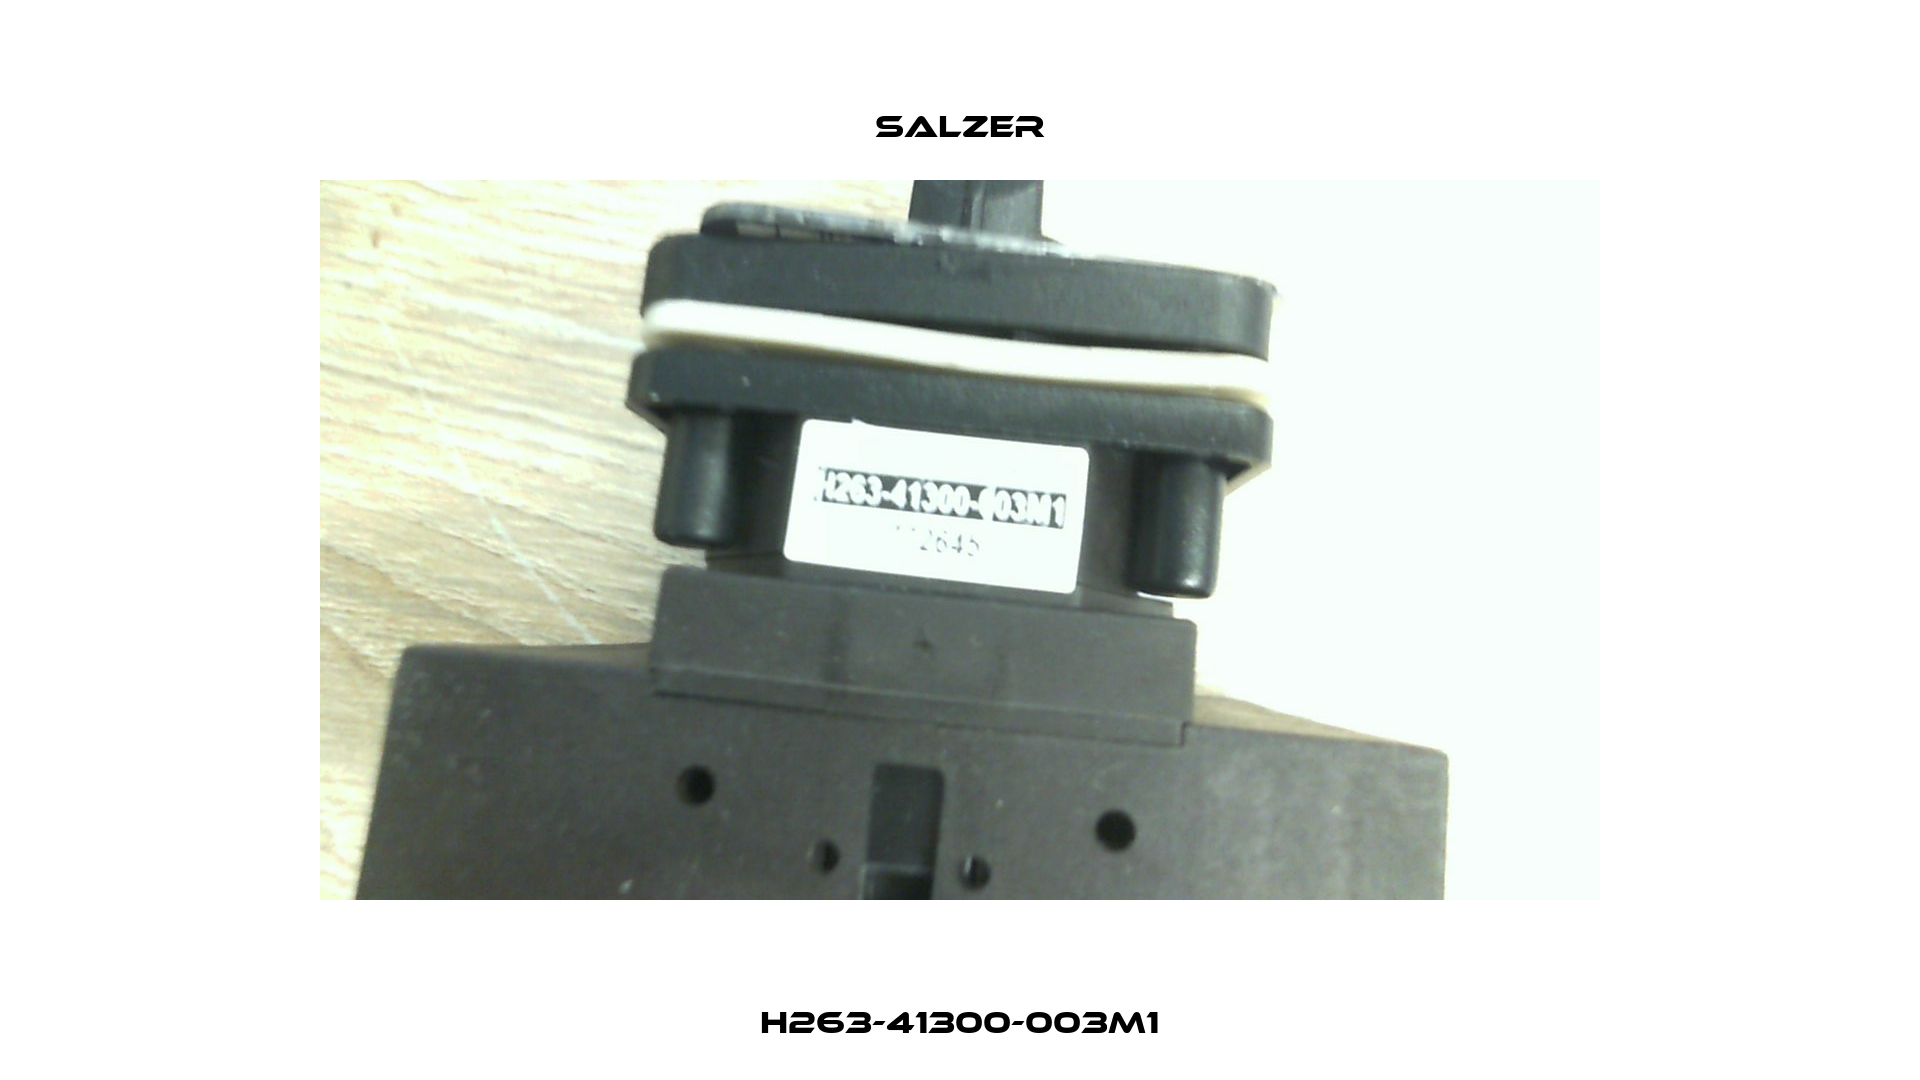 H263-41300-003M1 Salzer